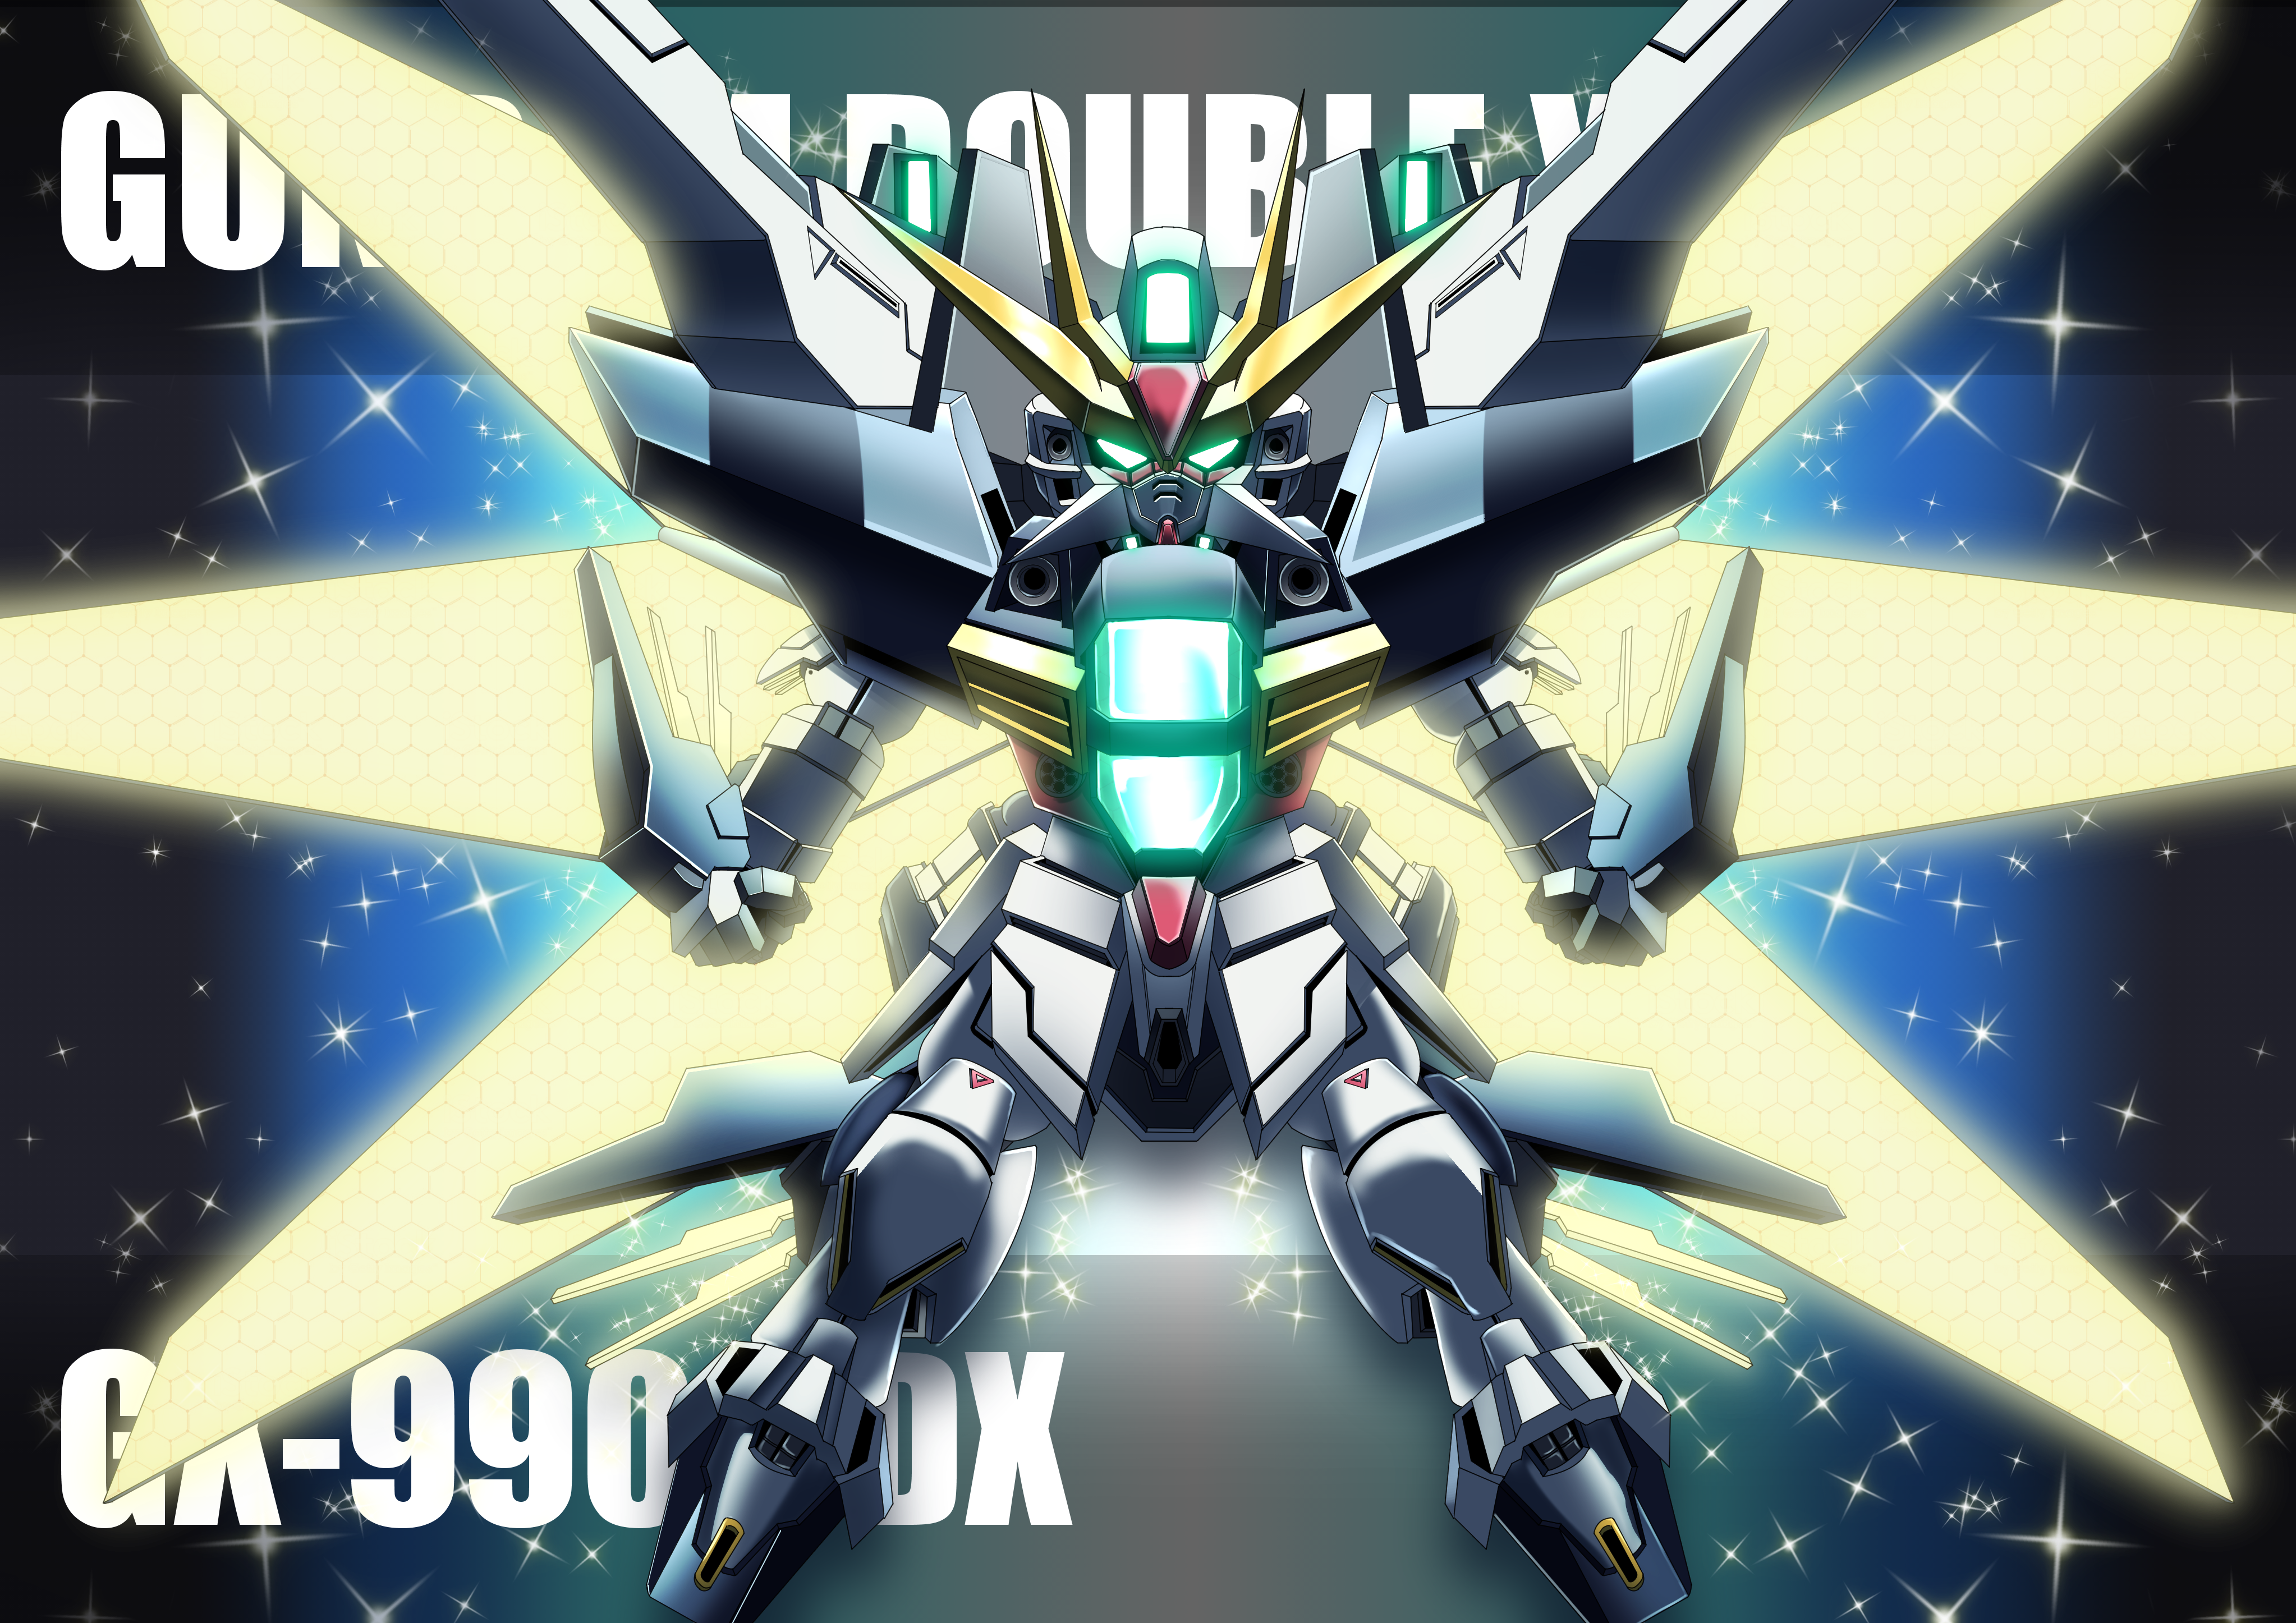 Anime Mechs Gundam Double X After War Gundam X Gundam Super Robot Taisen Artwork Digital Art Fan Art 4092x2893